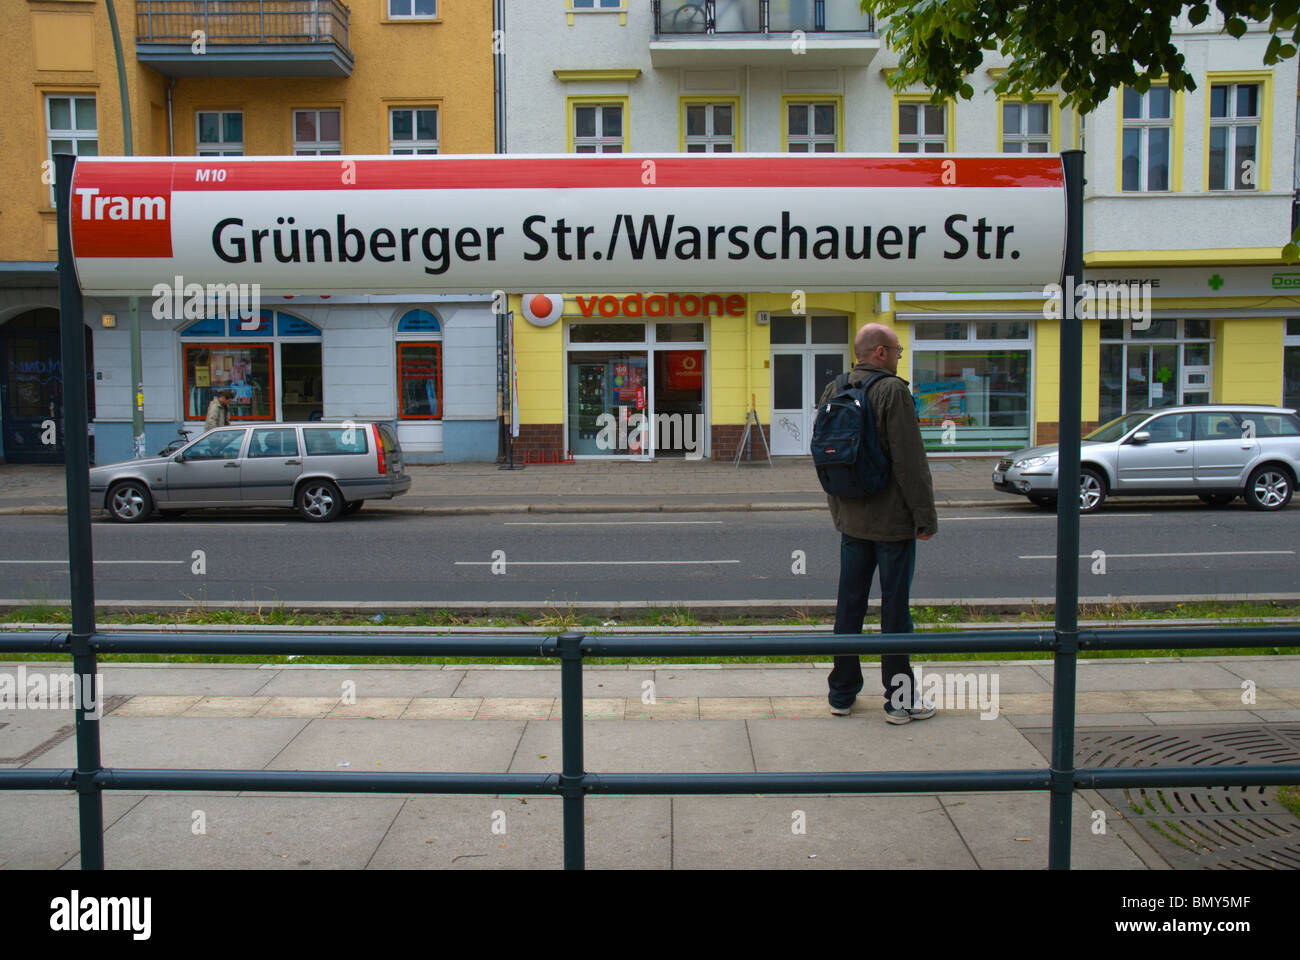 Grünberger strasse/Warschauer Strasse M10 tram stop Friedrichshain east Berlin Germany Europe Stock Photo